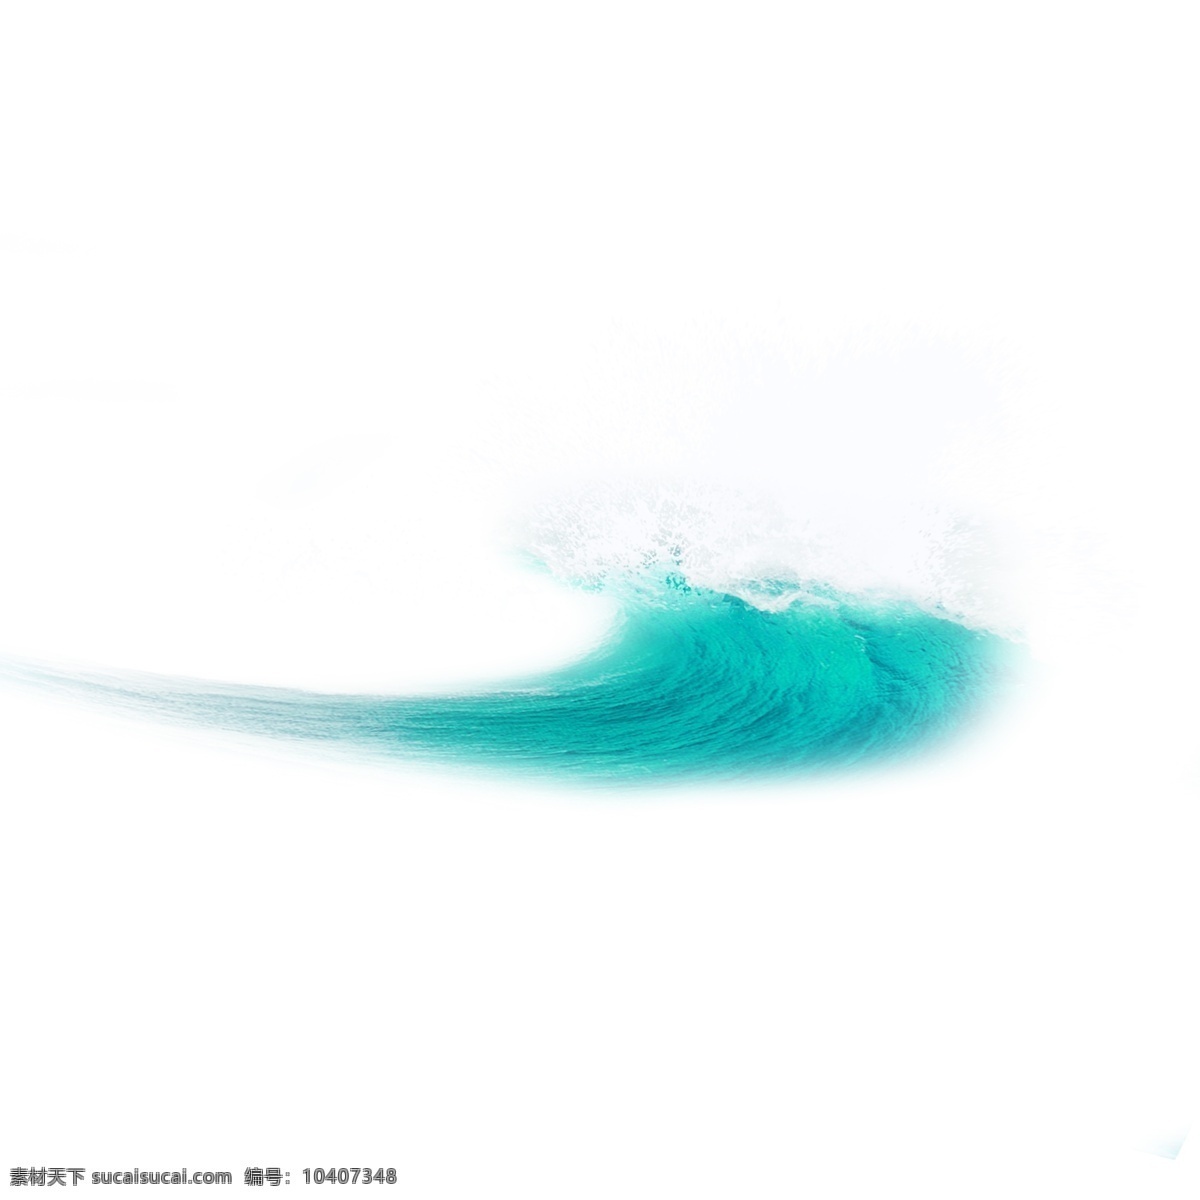 海浪 蓝色 海洋 大风大浪 蓝色水浪 喷溅的浪花 白色浪花 波浪 水浪 浪花 波涛 大海 效果 矢量 浪 装饰